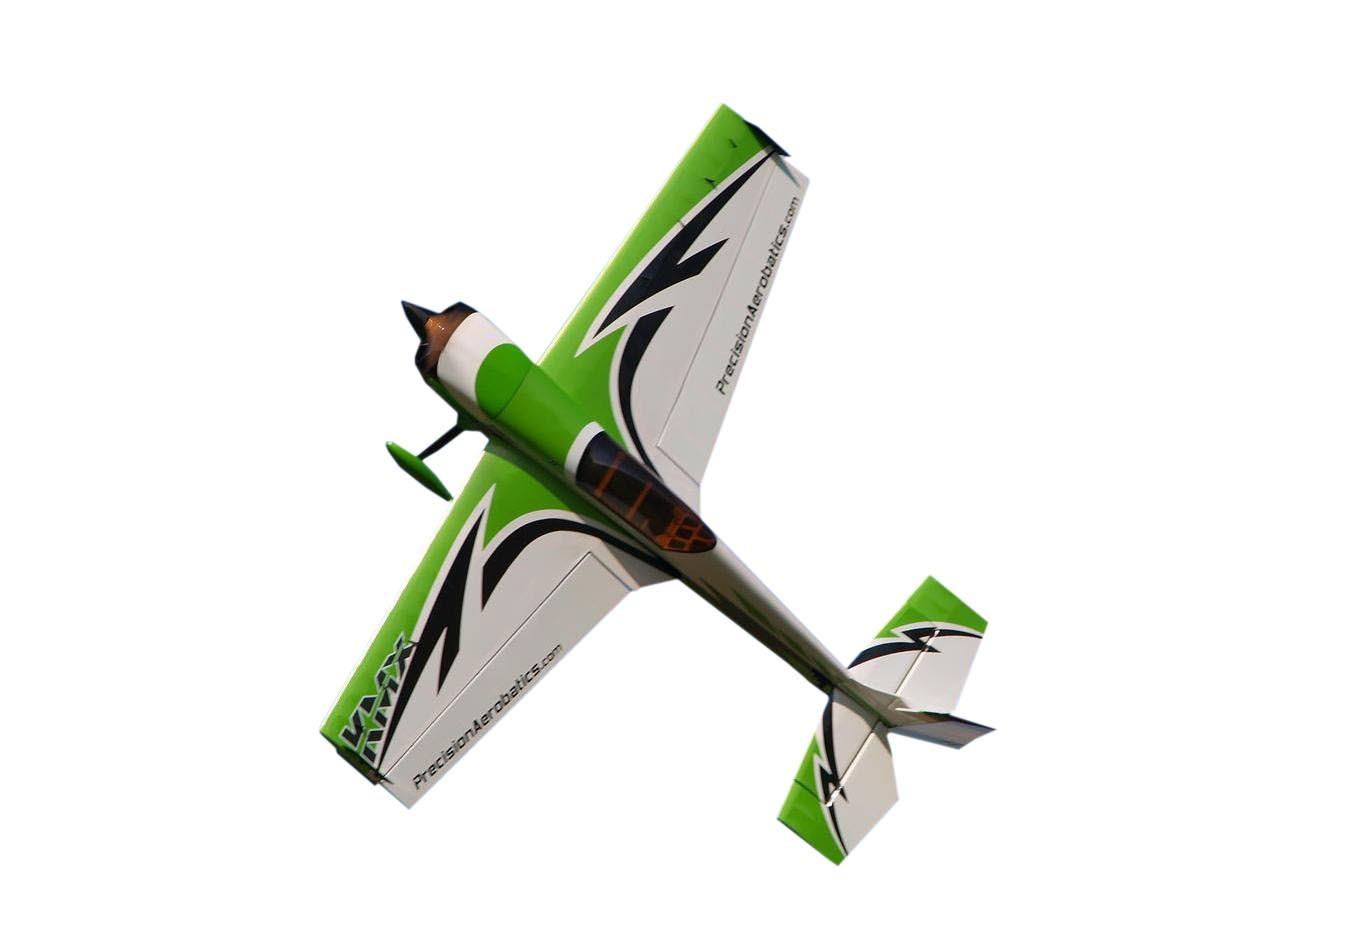 Самолёт радиоуправляемый Precision Aerobatics Katana MX 1448мм KIT (зеленый) PA-KMX-GREEN